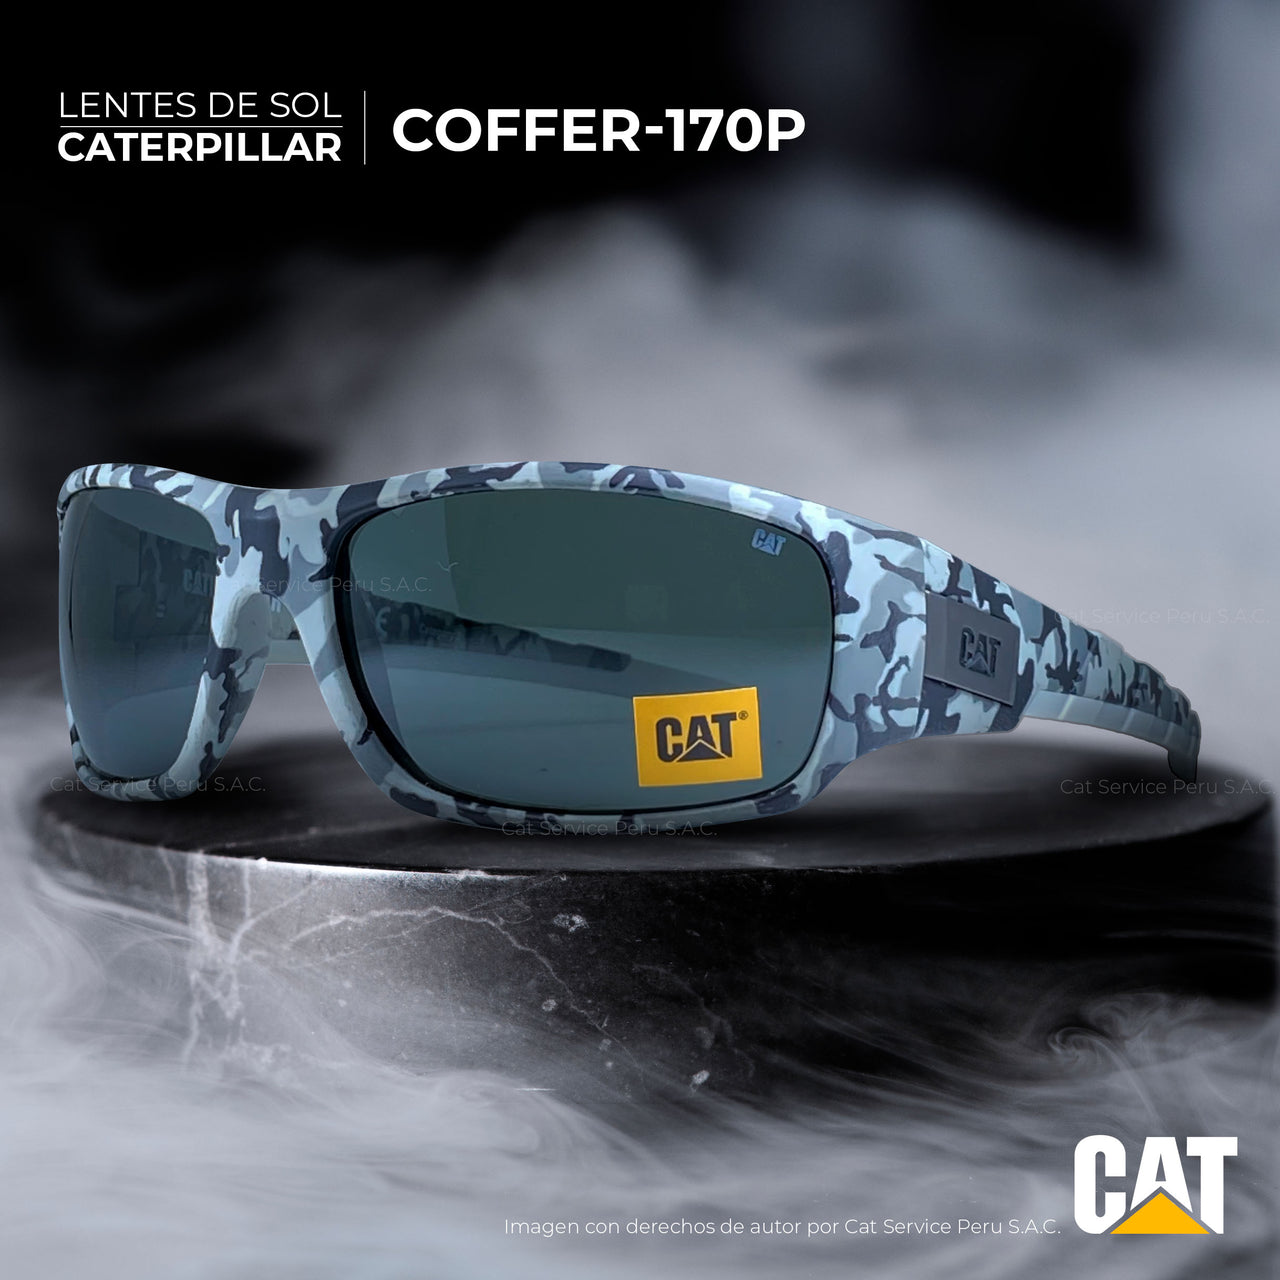 कैट सीटीएस कॉफ़र 170पी मैट ब्लैक मून्स पोलराइज़्ड धूप का चश्मा 